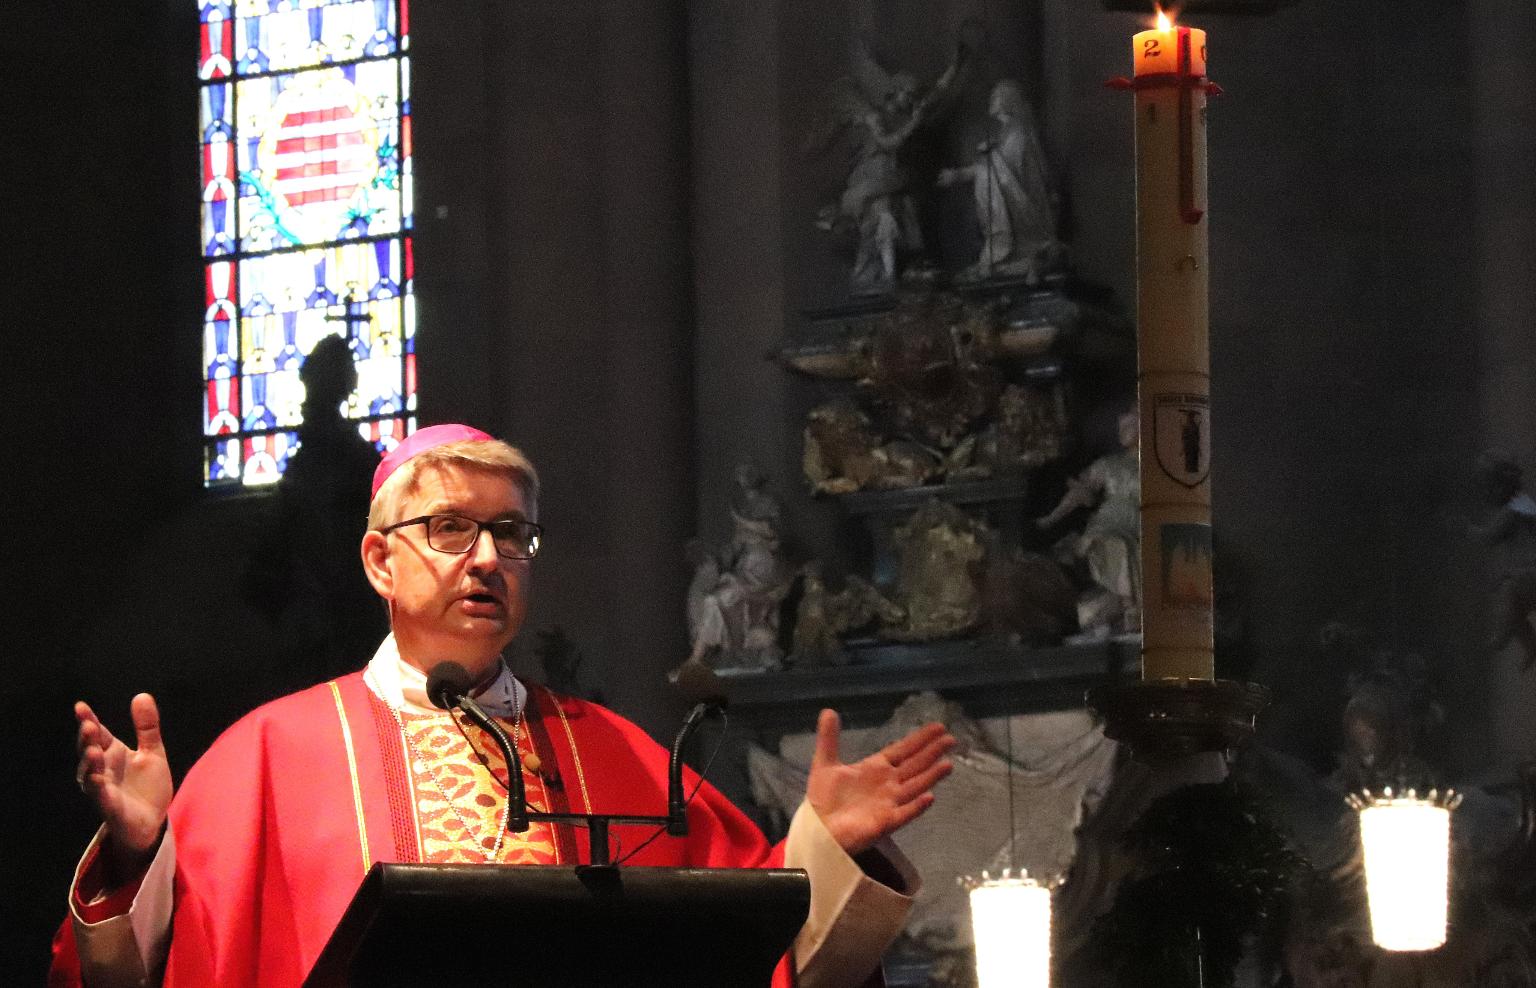 Mainz, 9.6.2019: Bischof Peter Kohlgraf rief dazu auf, für den Pastoralen Weg die Türen aufzumachen und aufzubrechen. (c) Bistum Mainz / Matschak